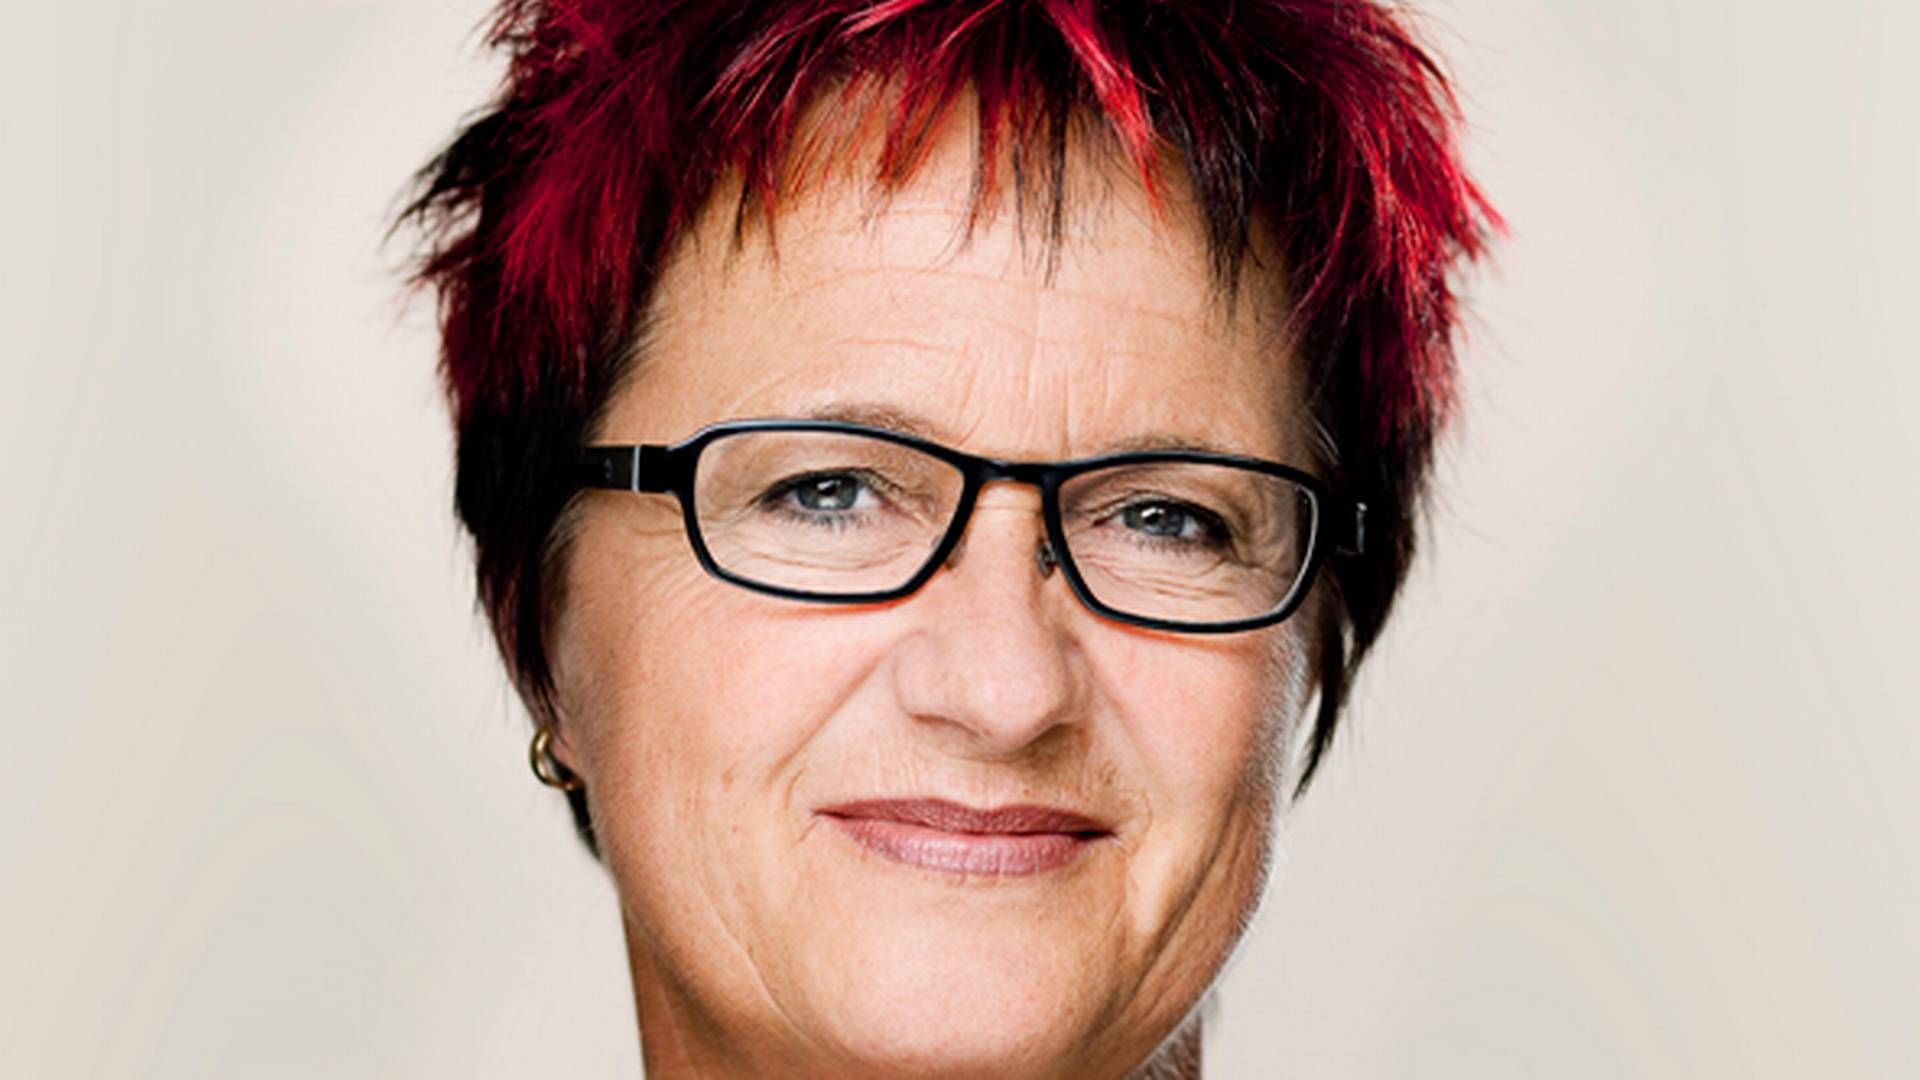 It-ordfører Karin Gaardsted (S).